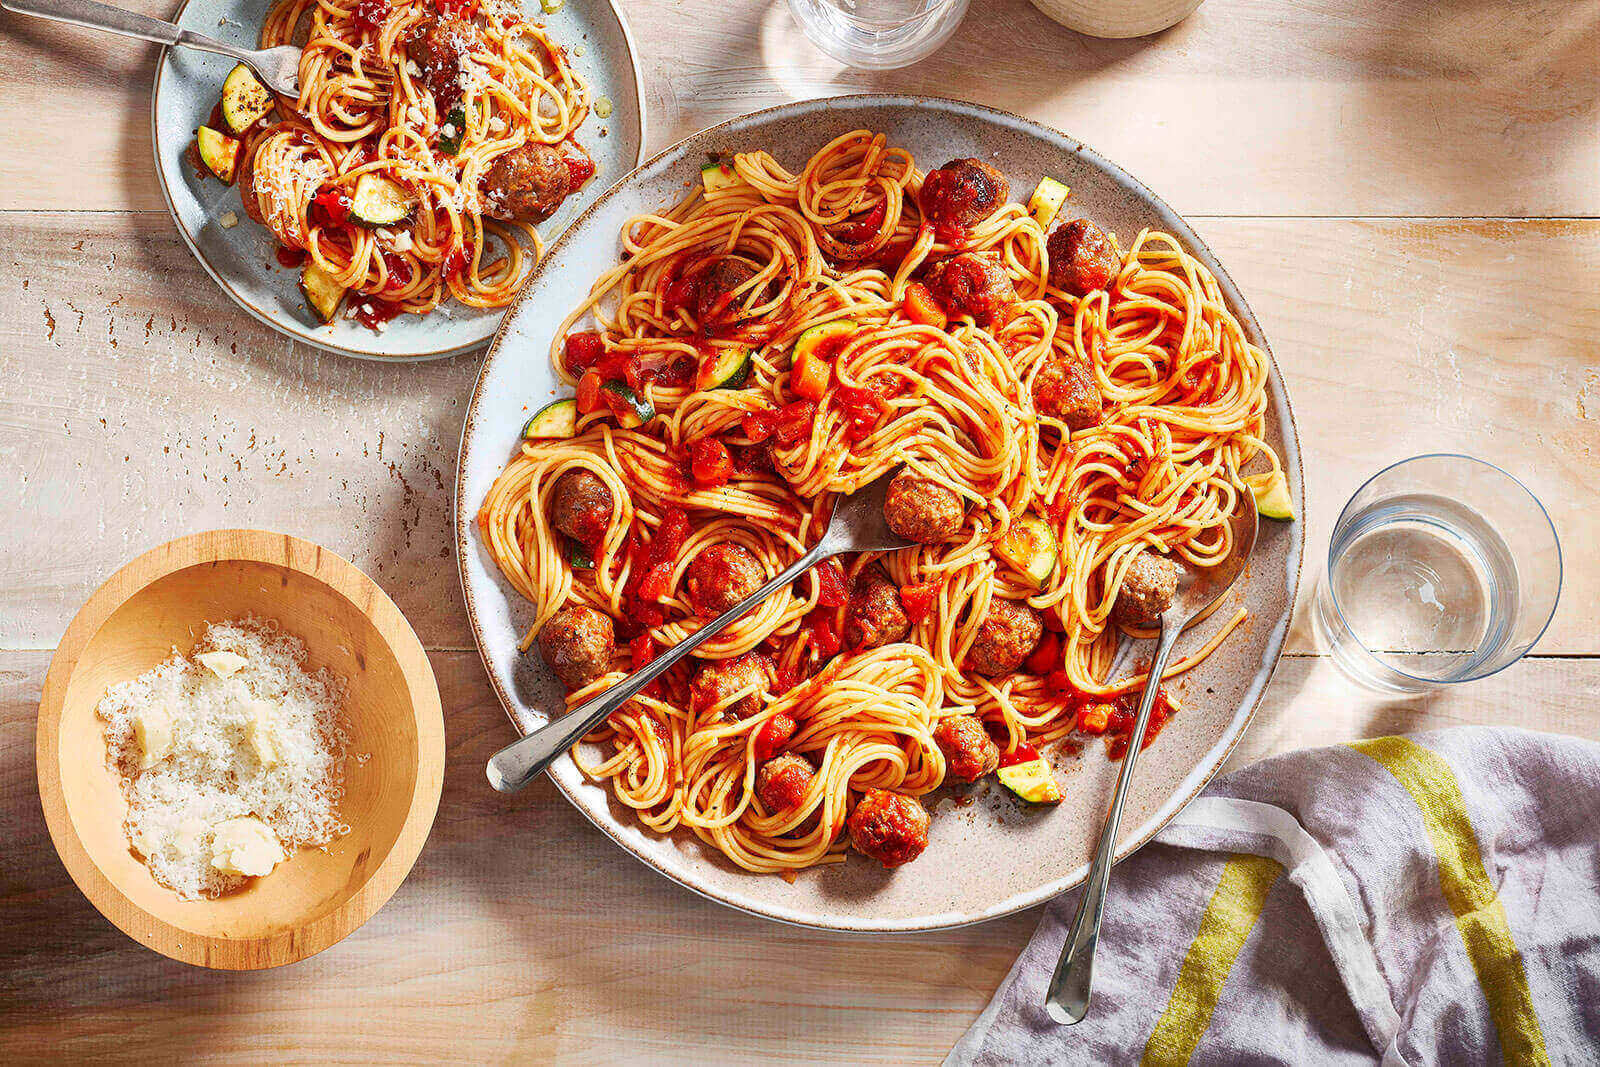 Quick & Easy Spaghetti & Meatballs